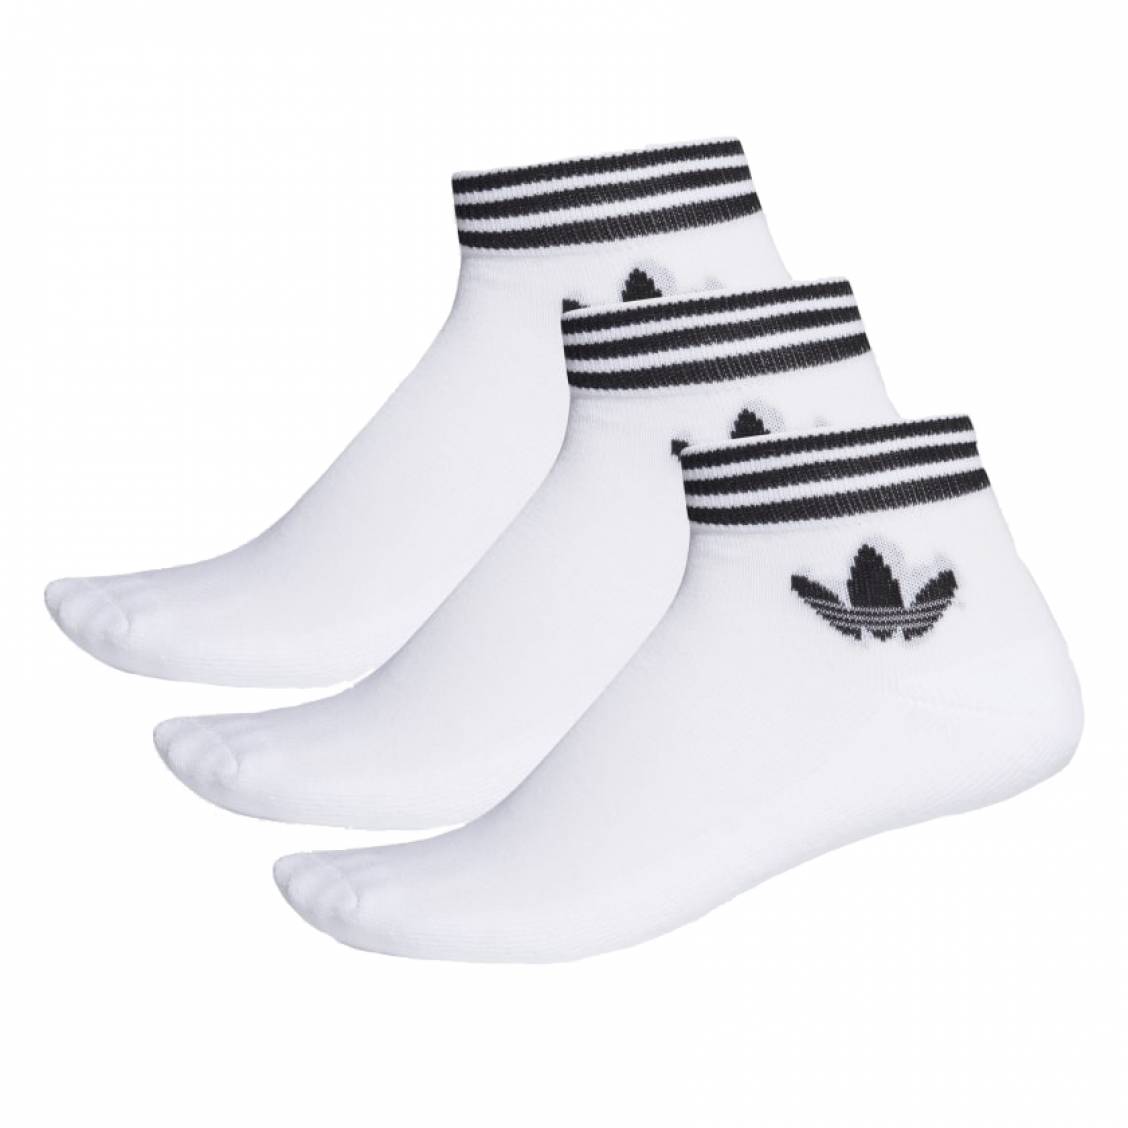 Chaussettes unies (lot de 3 paires) - Blanc adidas